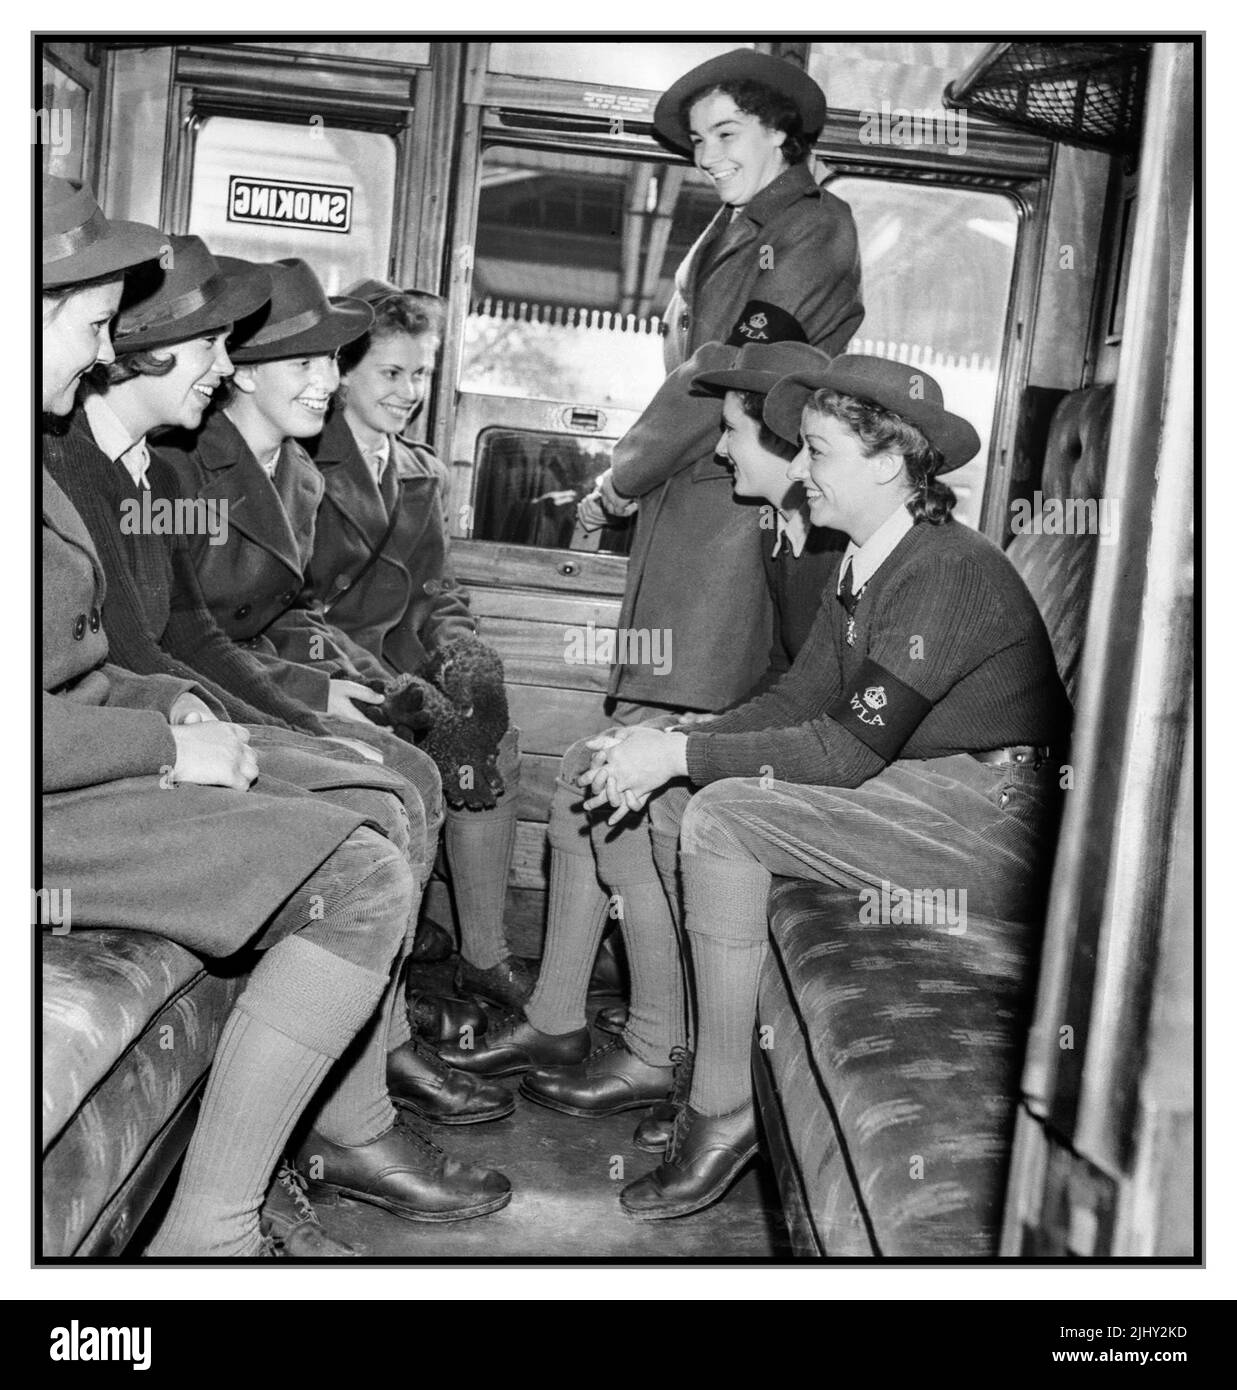 WW2 les filles de l'Armée de terre des femmes dans une voiture de chemin de fer, portant leurs brassards WLA en route vers leurs fermes terrestres respectives. La bataille de la terre - le travail agricole de l'Armée de terre des femmes sur le front intérieur britannique fournissant des légumes frais essentiels au Royaume-Uni, 1942 Seconde Guerre mondiale Seconde Guerre mondiale WW2 Banque D'Images